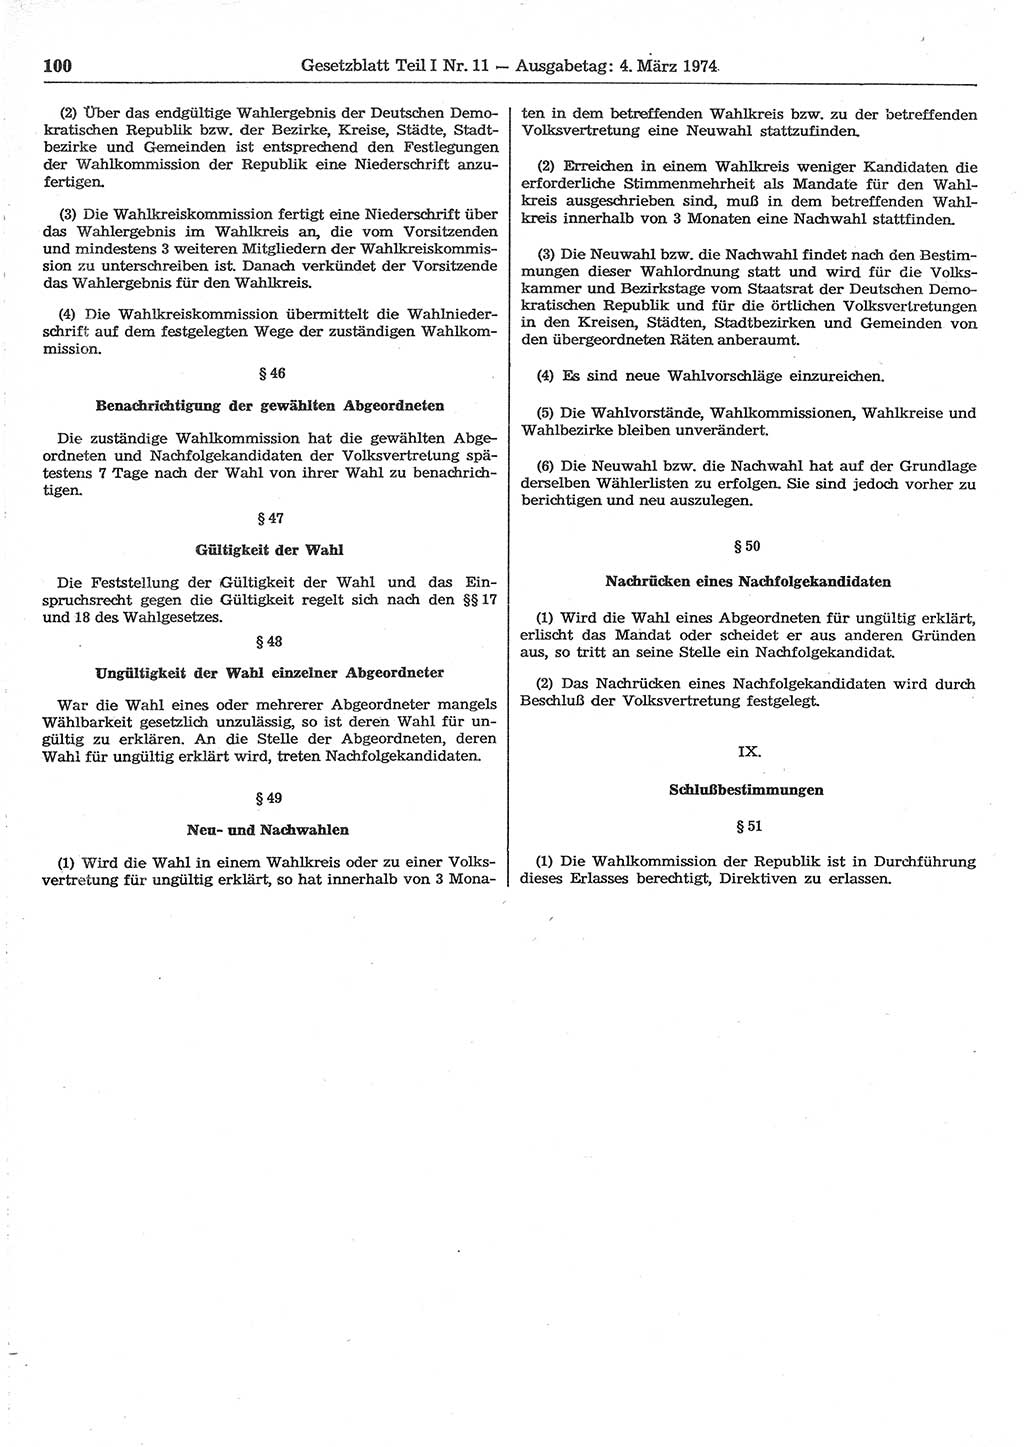 Gesetzblatt (GBl.) der Deutschen Demokratischen Republik (DDR) Teil Ⅰ 1974, Seite 100 (GBl. DDR Ⅰ 1974, S. 100)